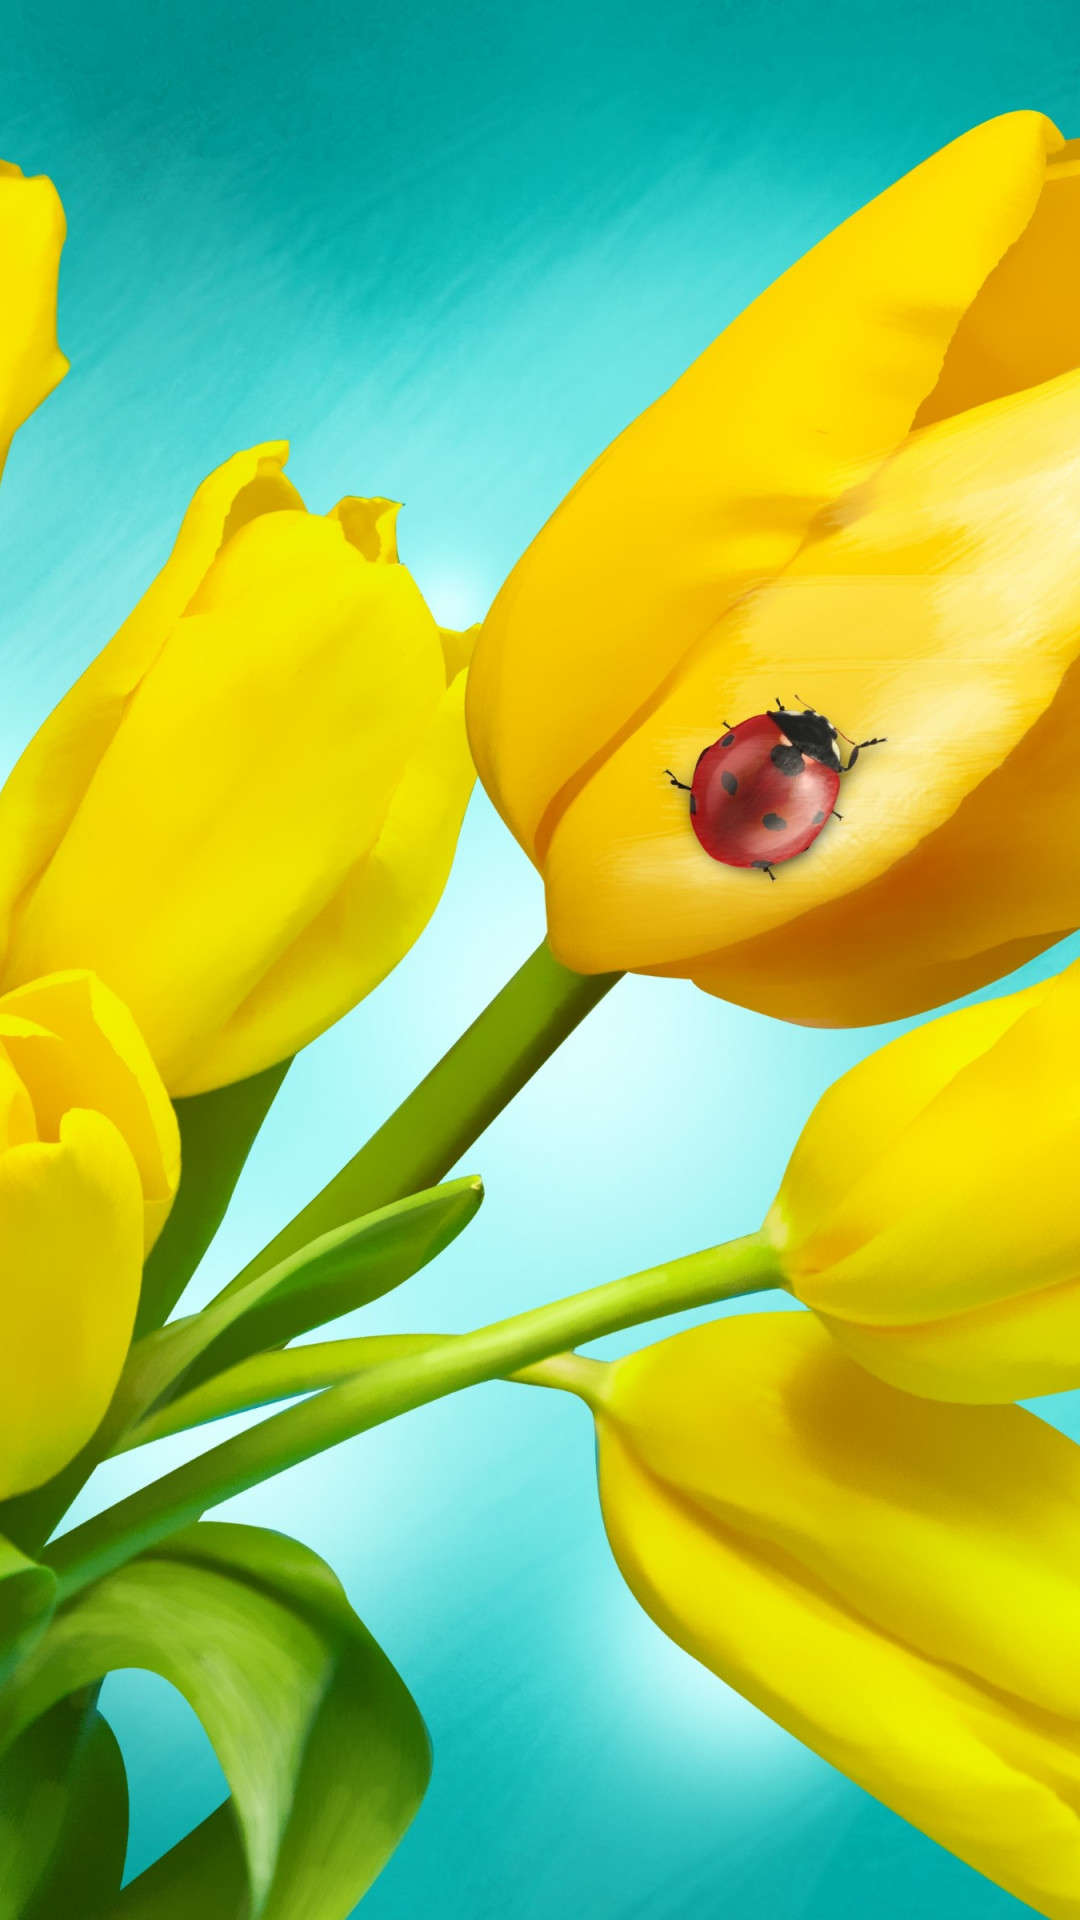 Ladybird on yellow tulips wallpaper 1080x1920